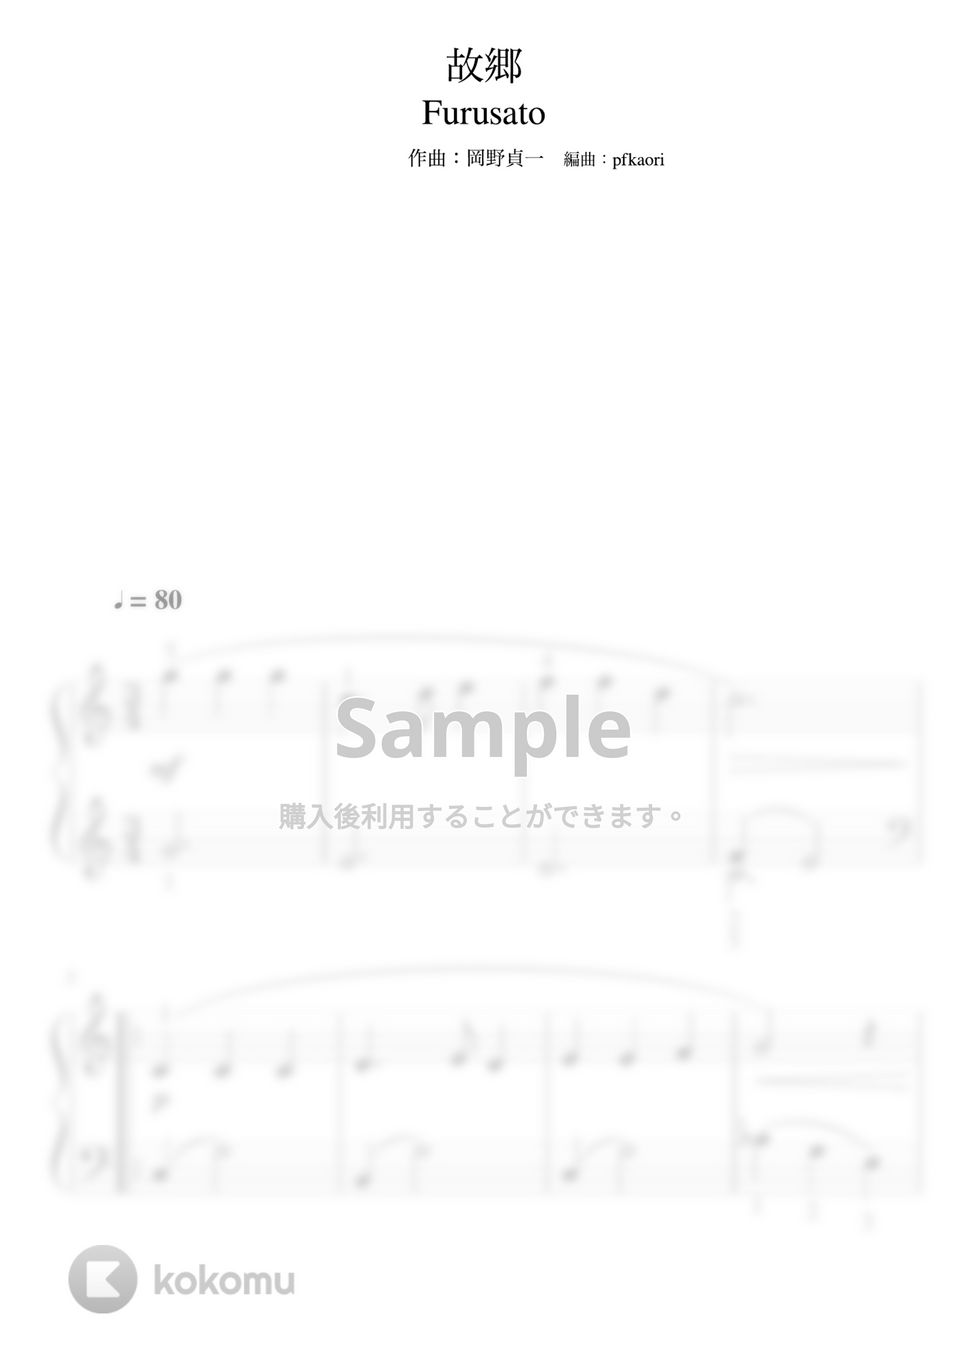 岡野貞一 - 故郷 (Cdur・ピアノソロ初級・指番号付き) by pfkaori